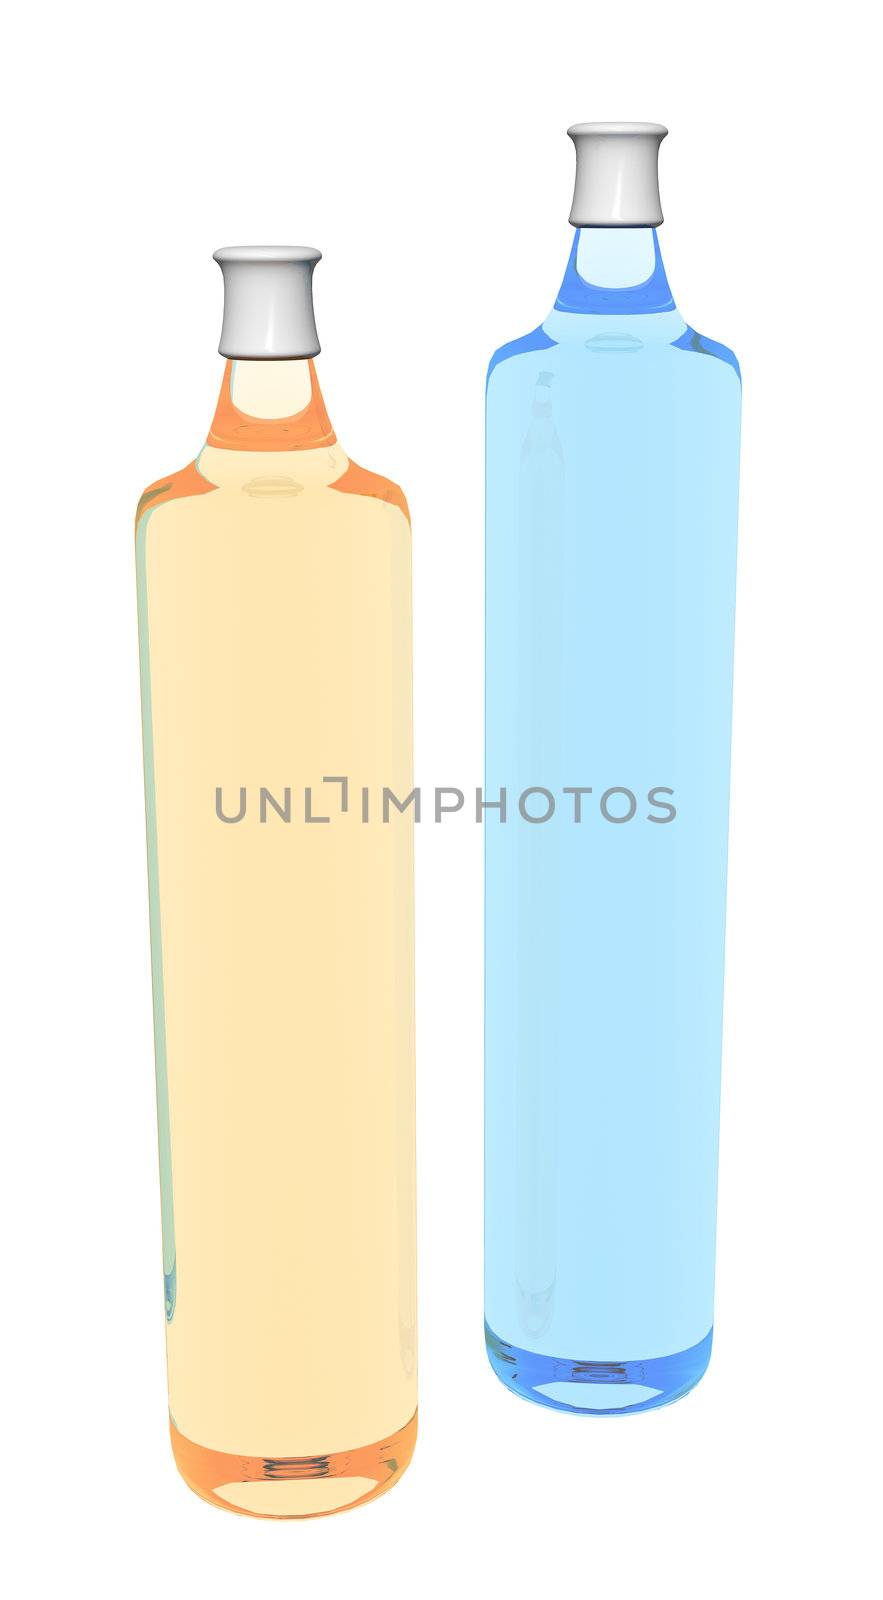 Shampoo bottles, orange and blue, 3D illustration